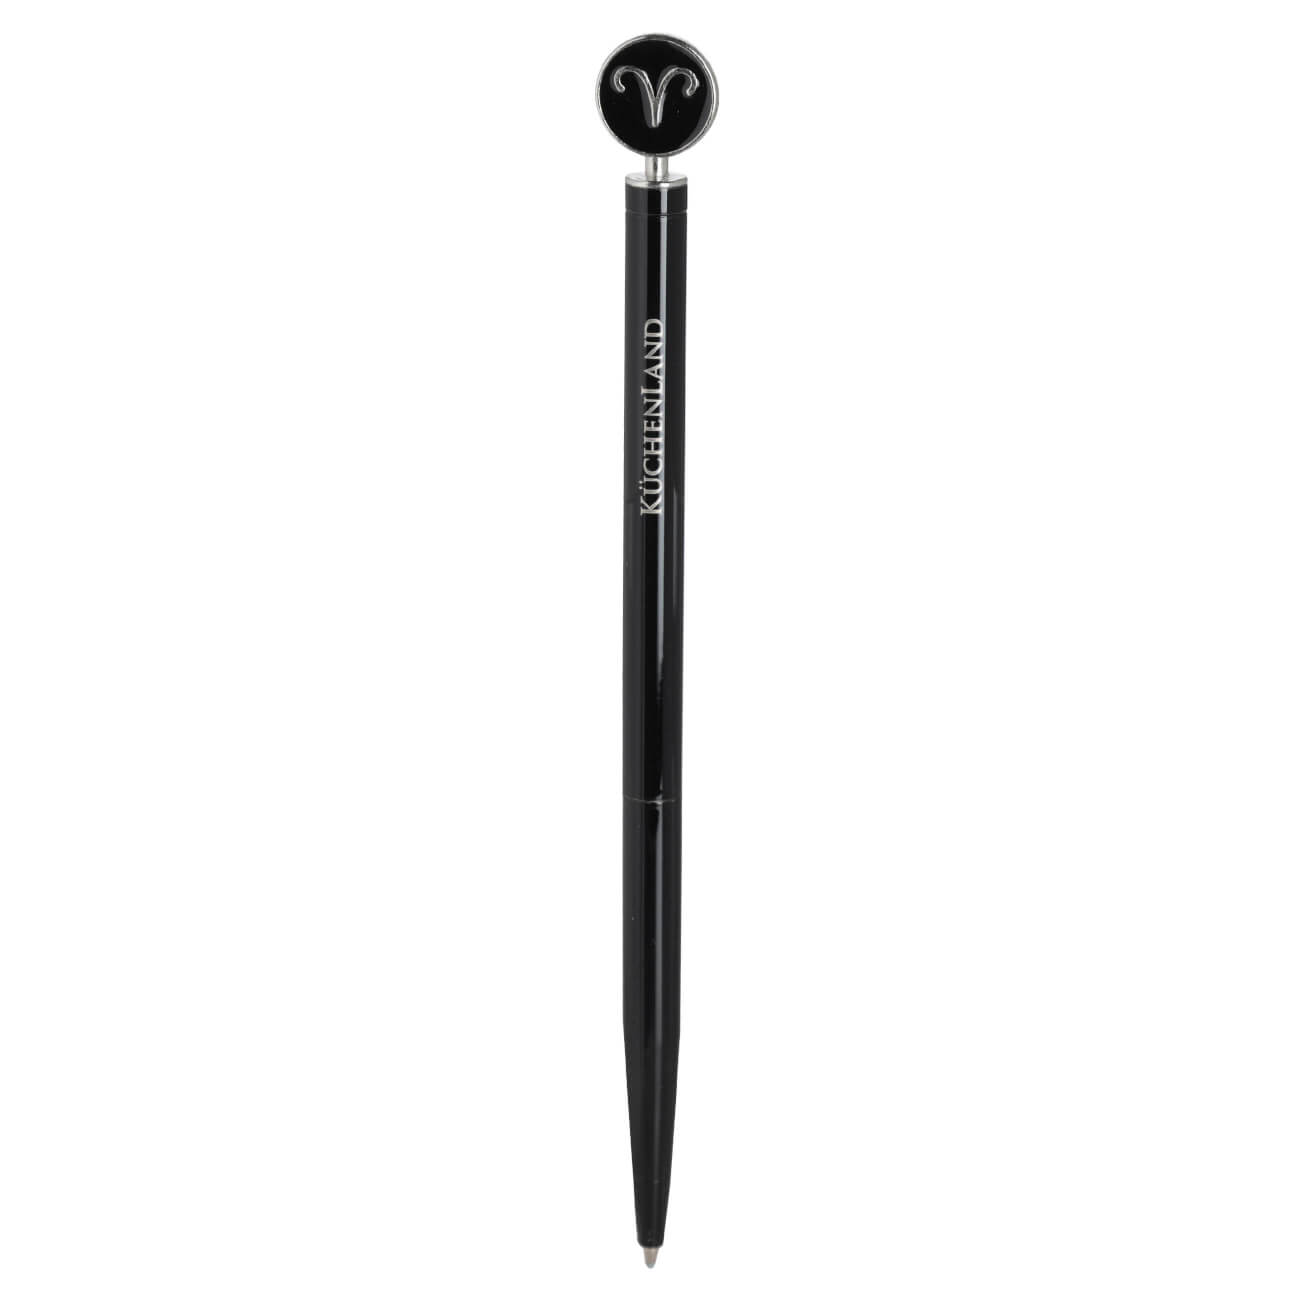 Ручка шариковая, 15 см, с фигуркой, сталь, черно-серебристая, Овен, Zodiac автоматическая шариковая ручка hatber